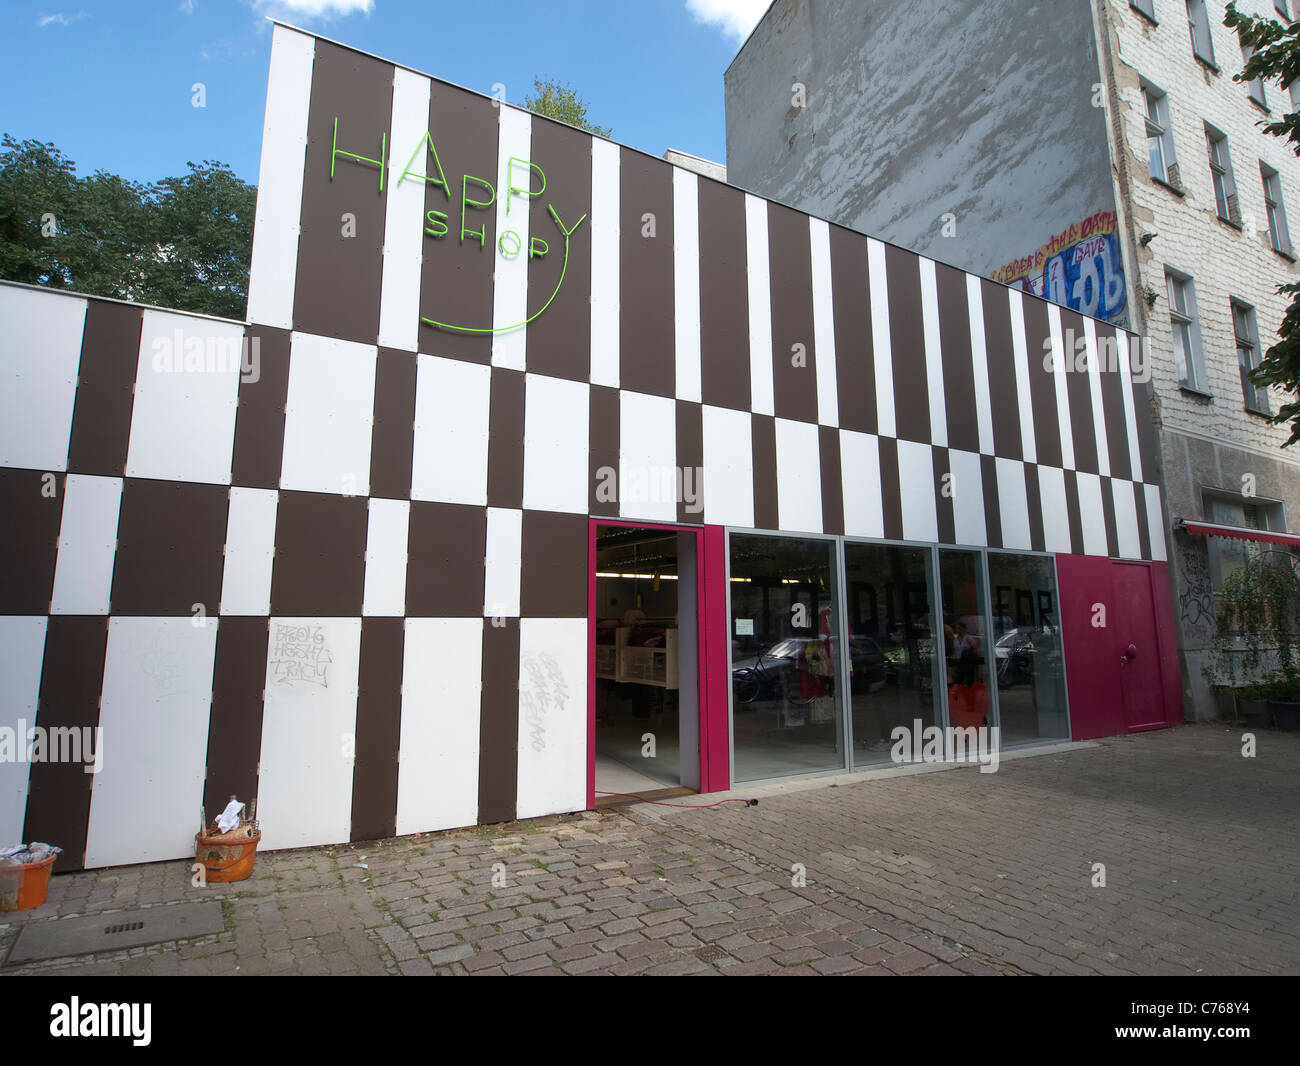 Neue hippe Mode Shop namens Happy Shop auf Torstraße im Bezirk Mitte Berlin Deutschland Stockfoto